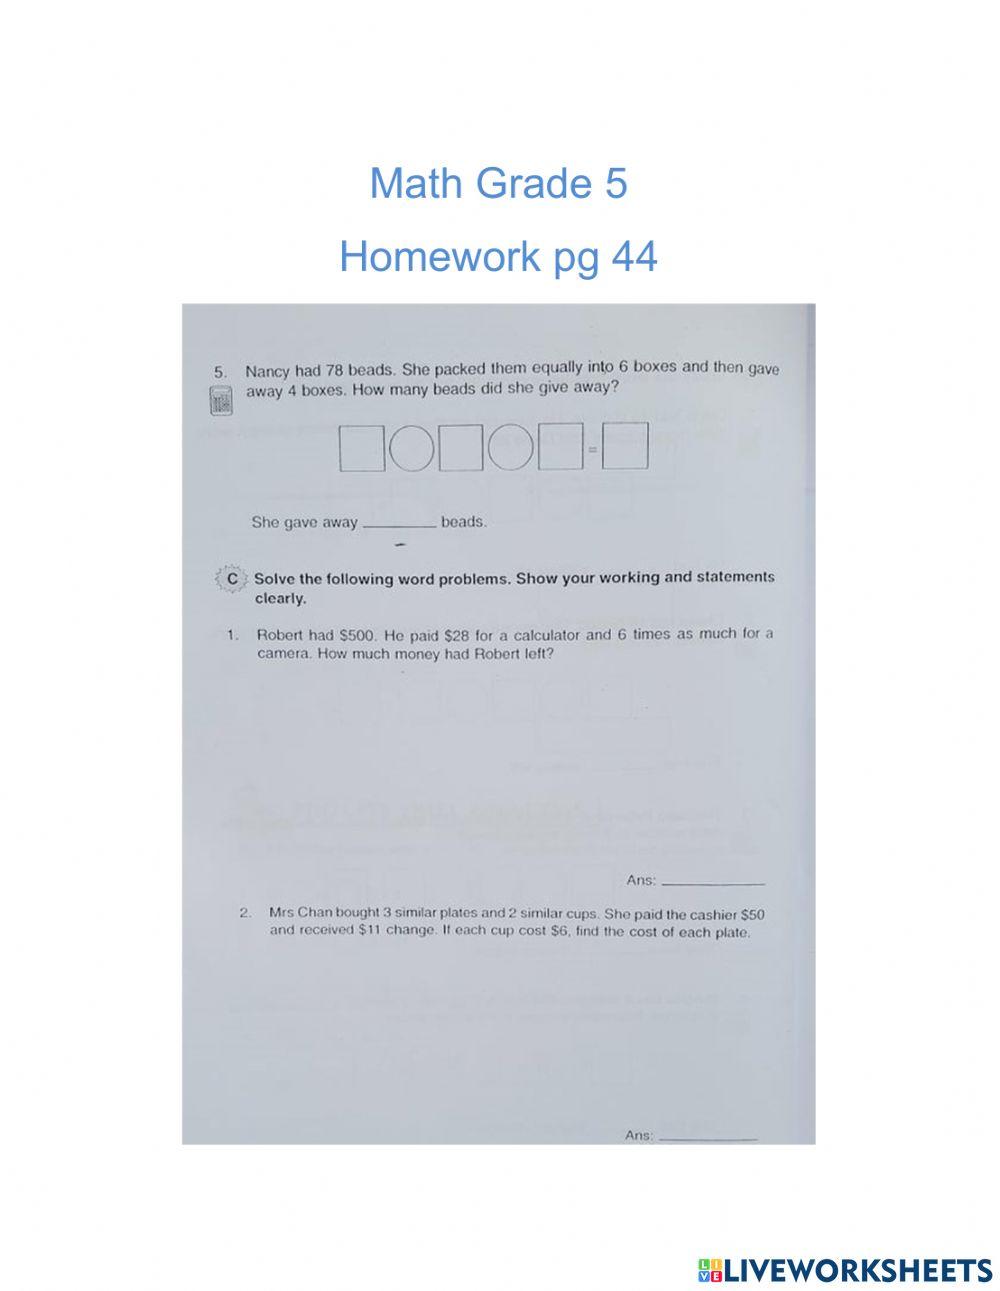 Math pg 44